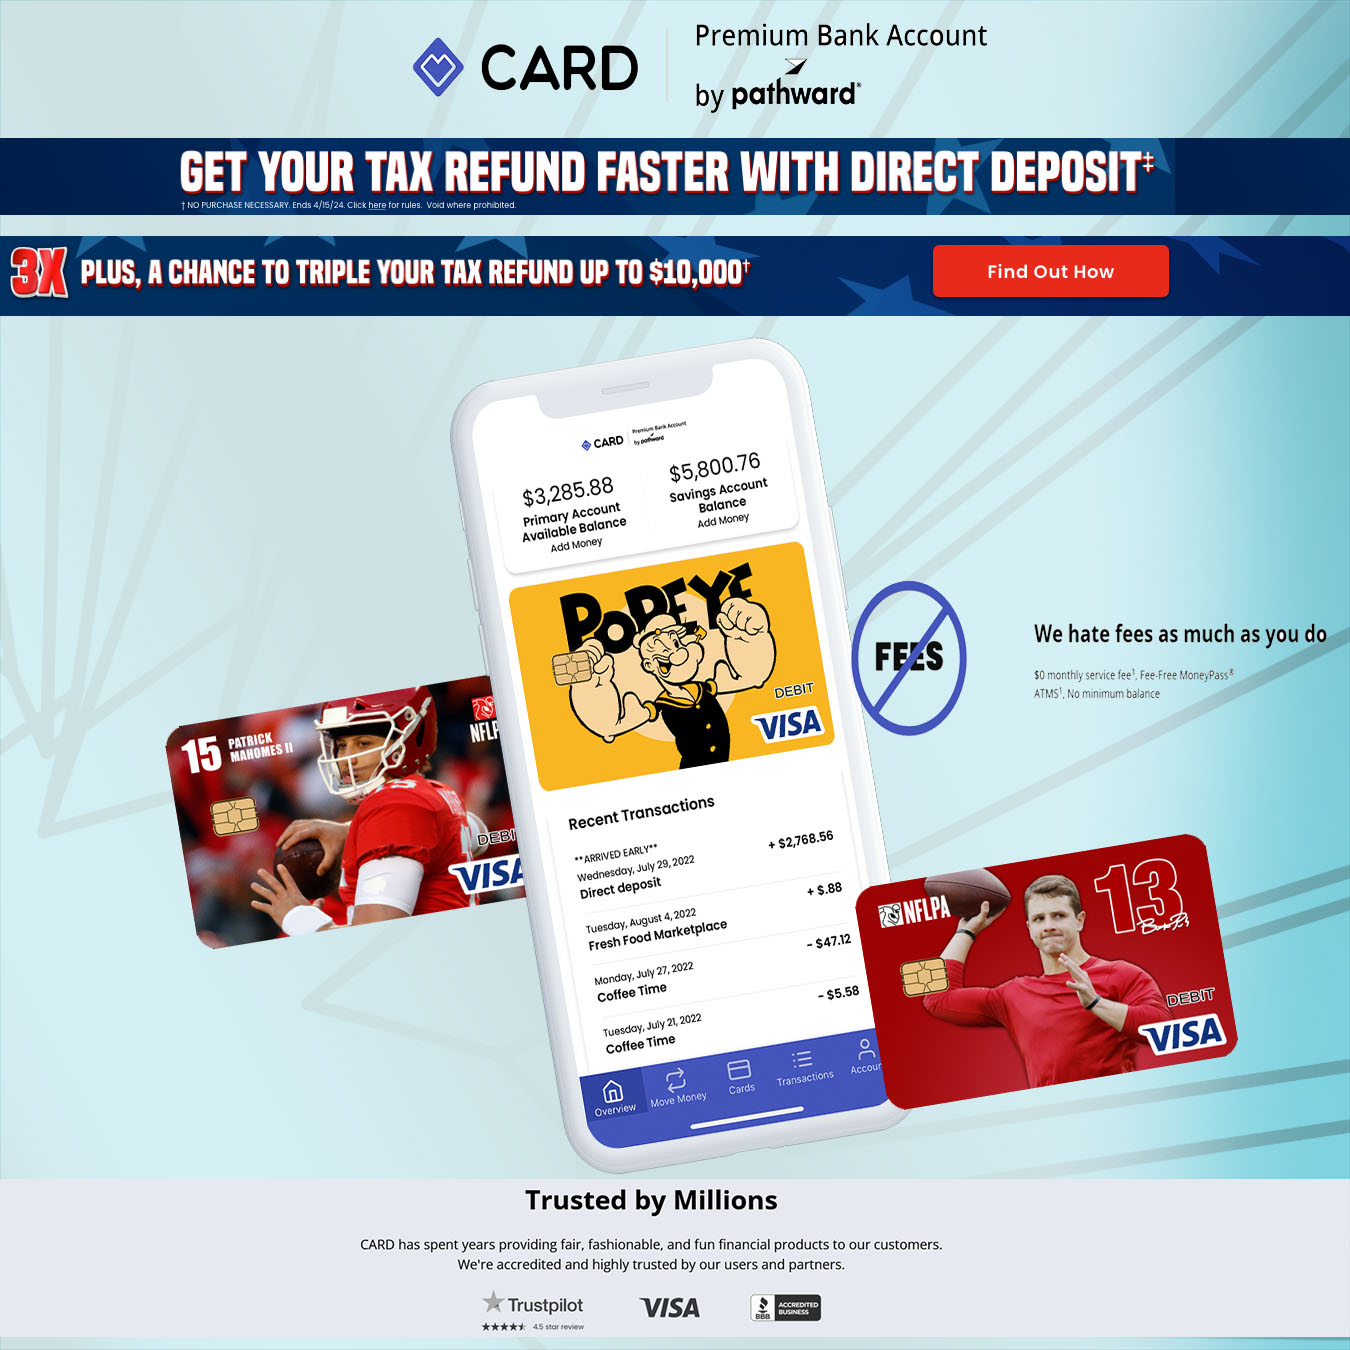 Card.com Prepaid Cards for Taxes